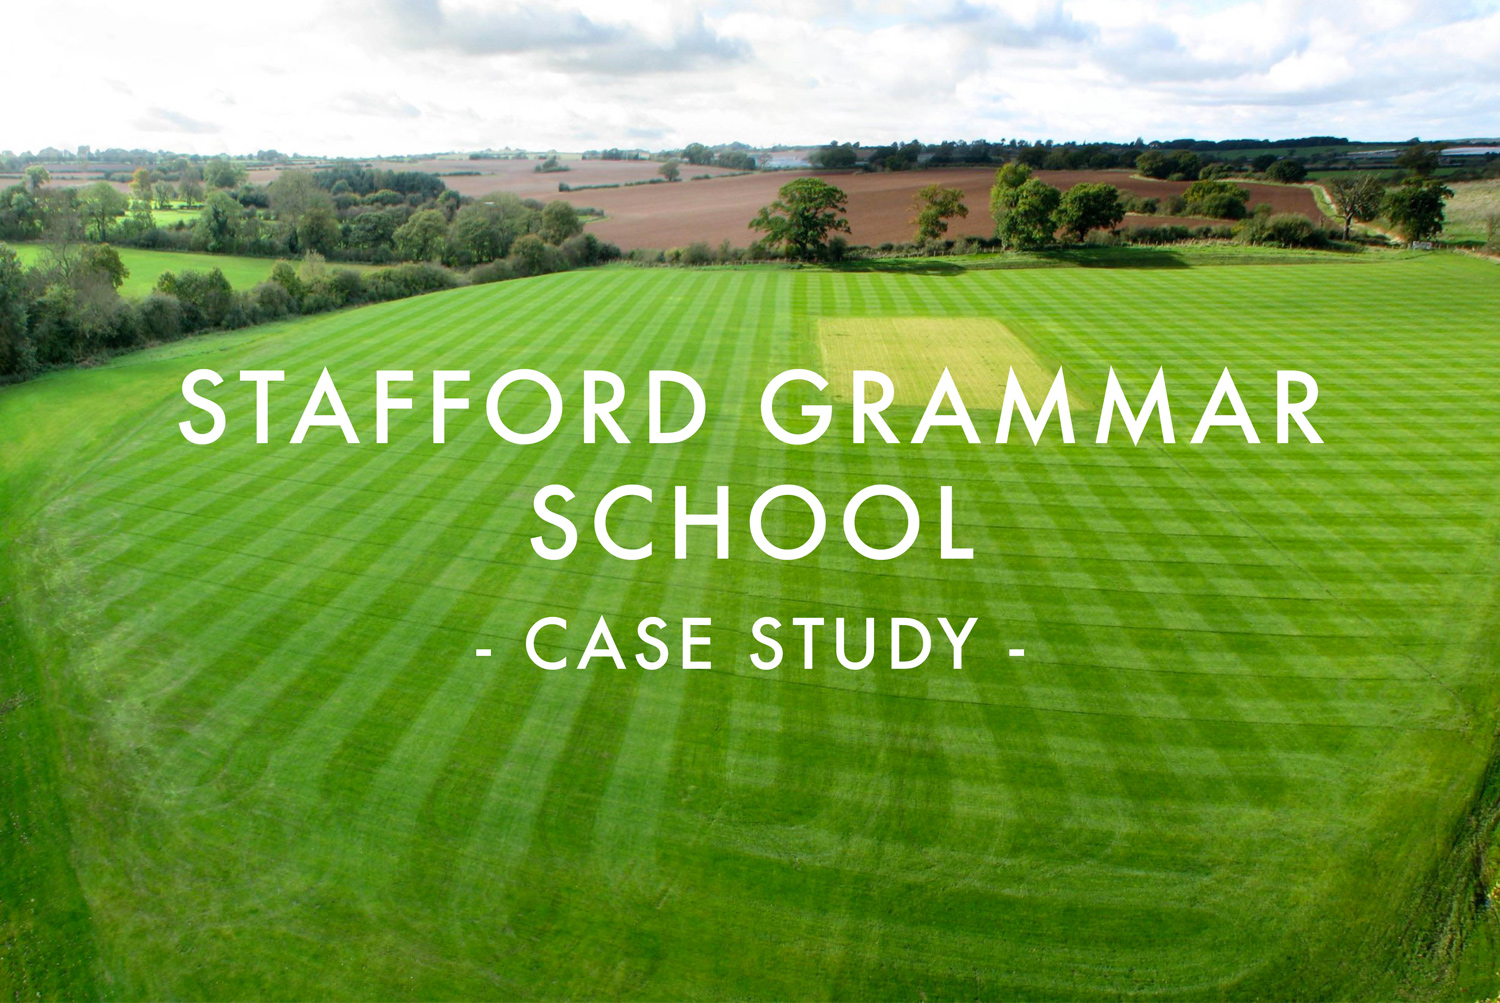 Stafford Grammar School - Case Study